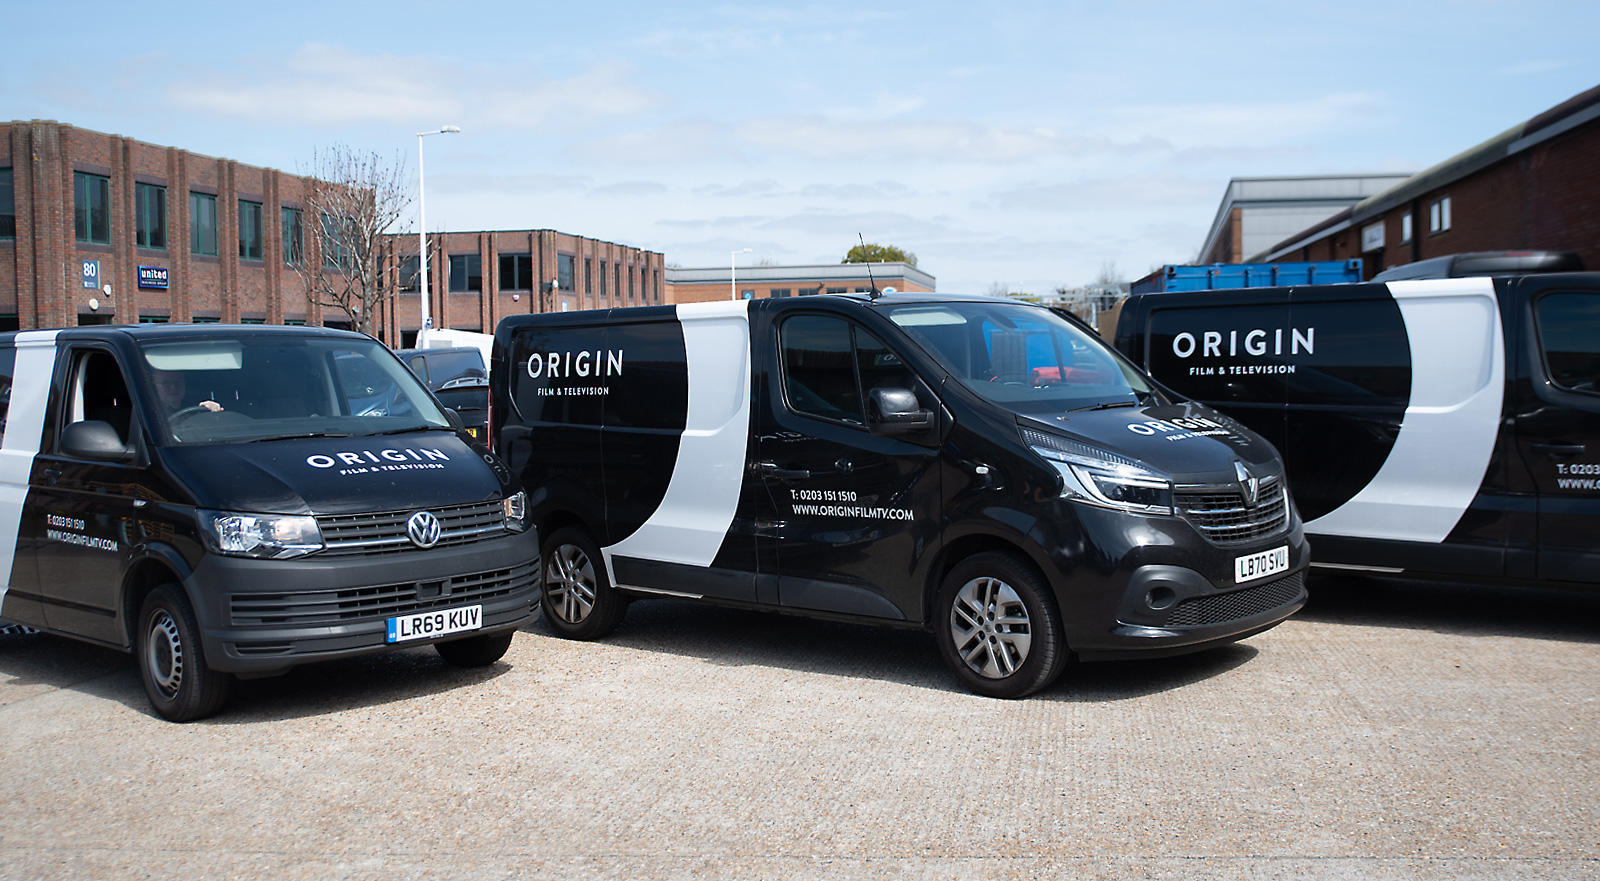 It’s a wrap! Our new vans get the Origin treatment